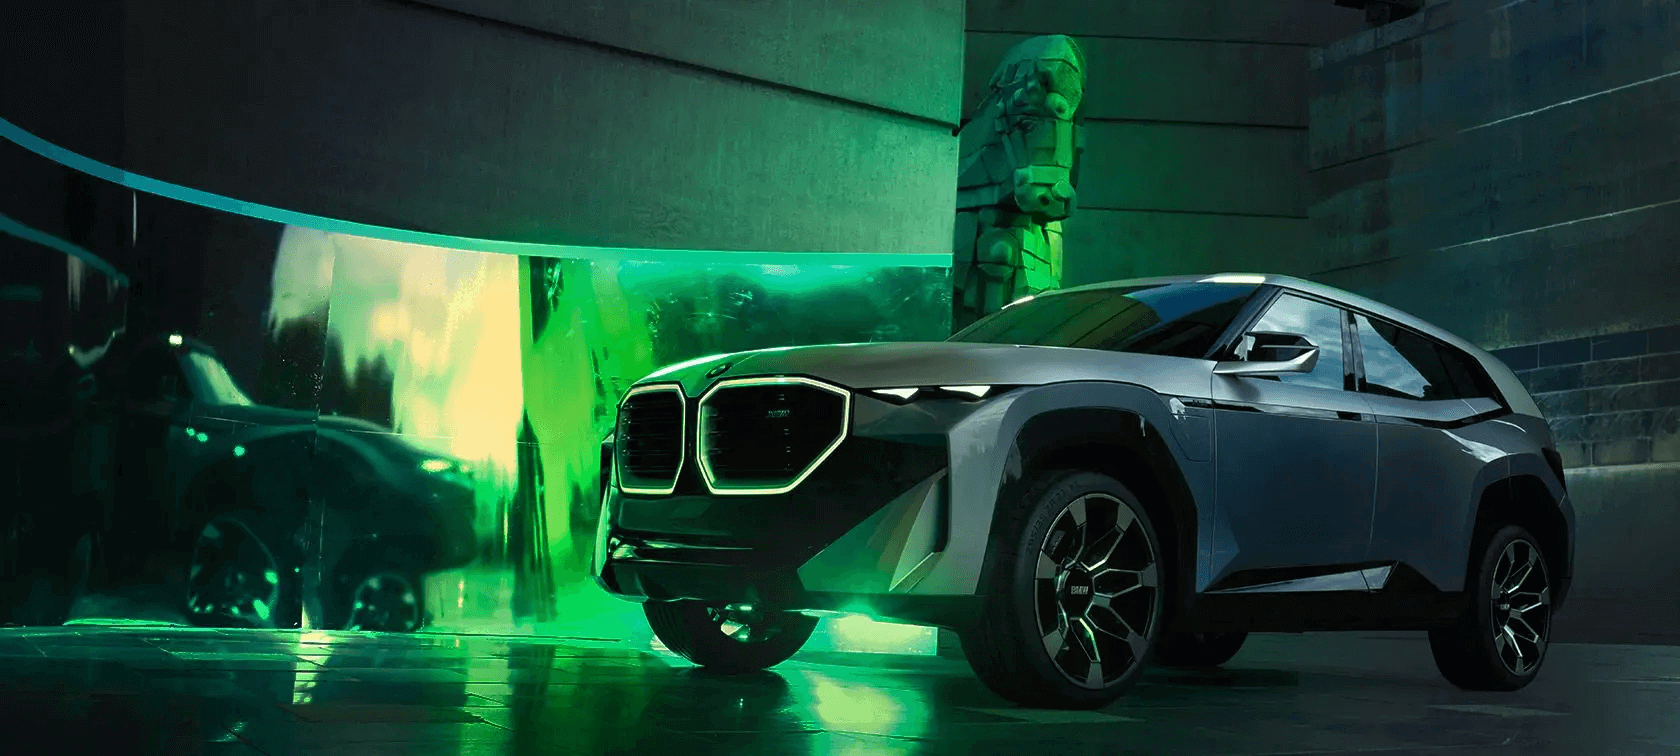 Radicalmente Novo: Concept BMW XM